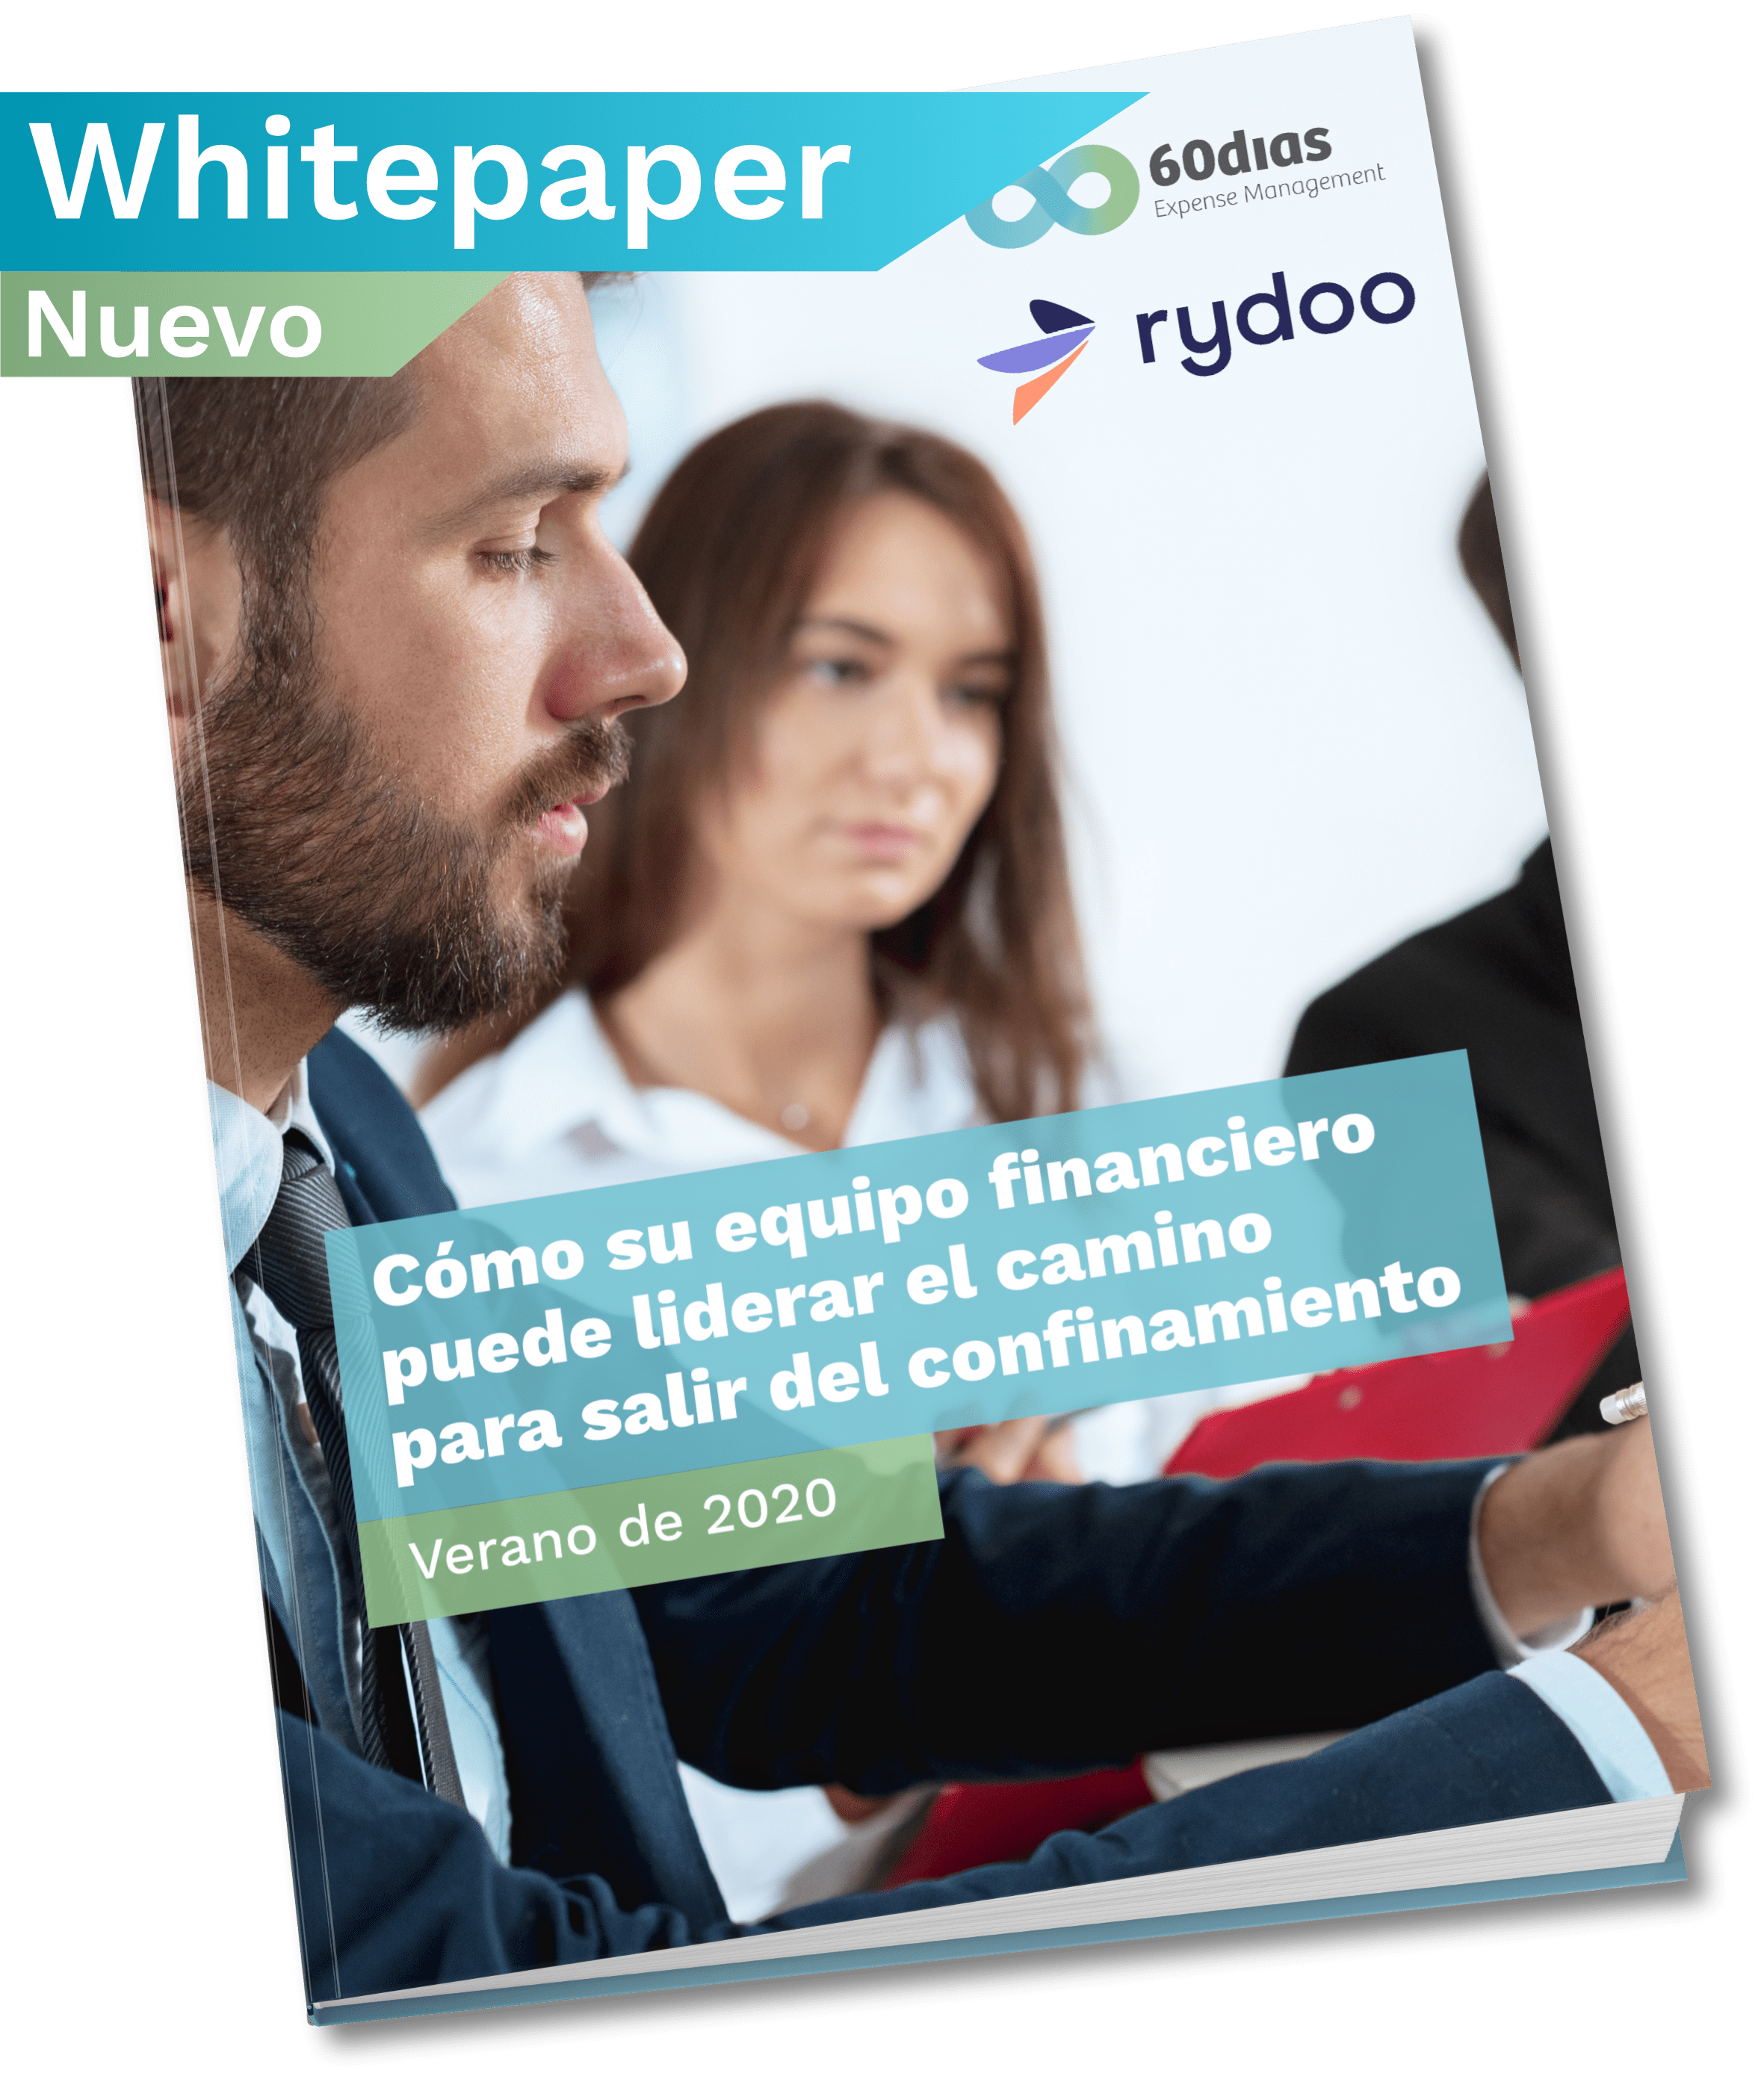 Whitepaper Captio & 60dias - Portada